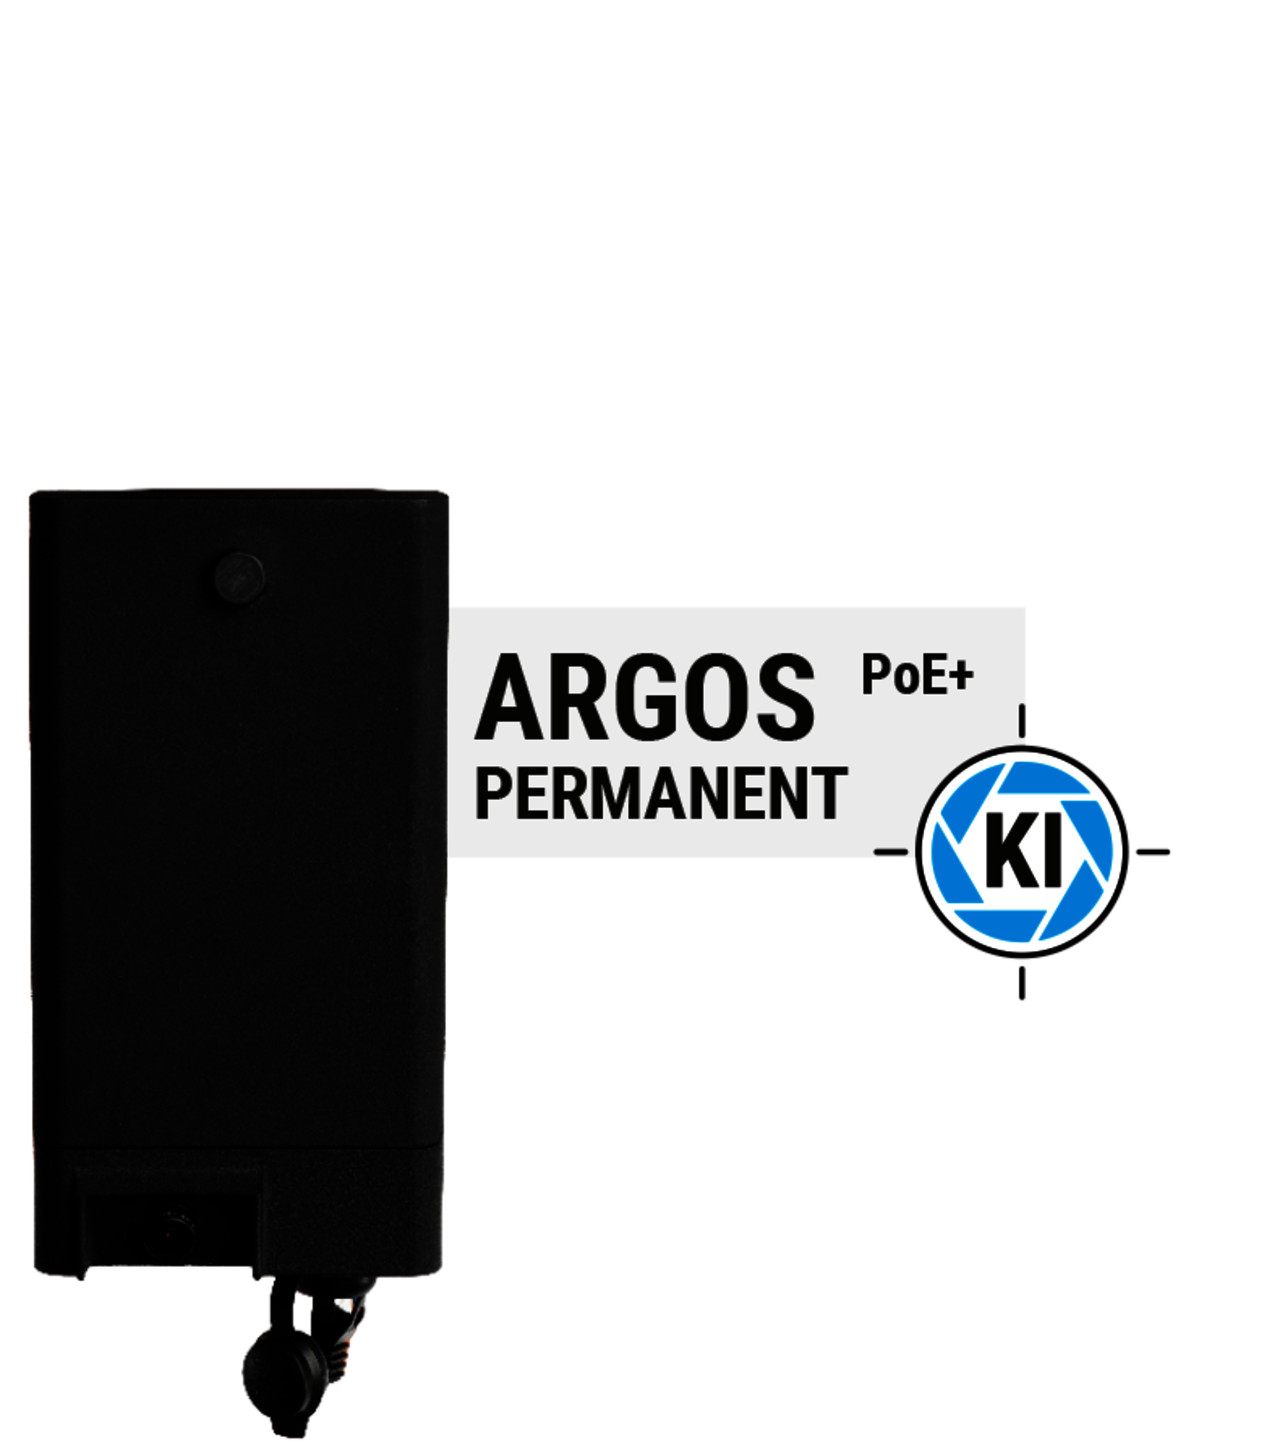 ARGOS permanent PoE - künstliche Intelligenz